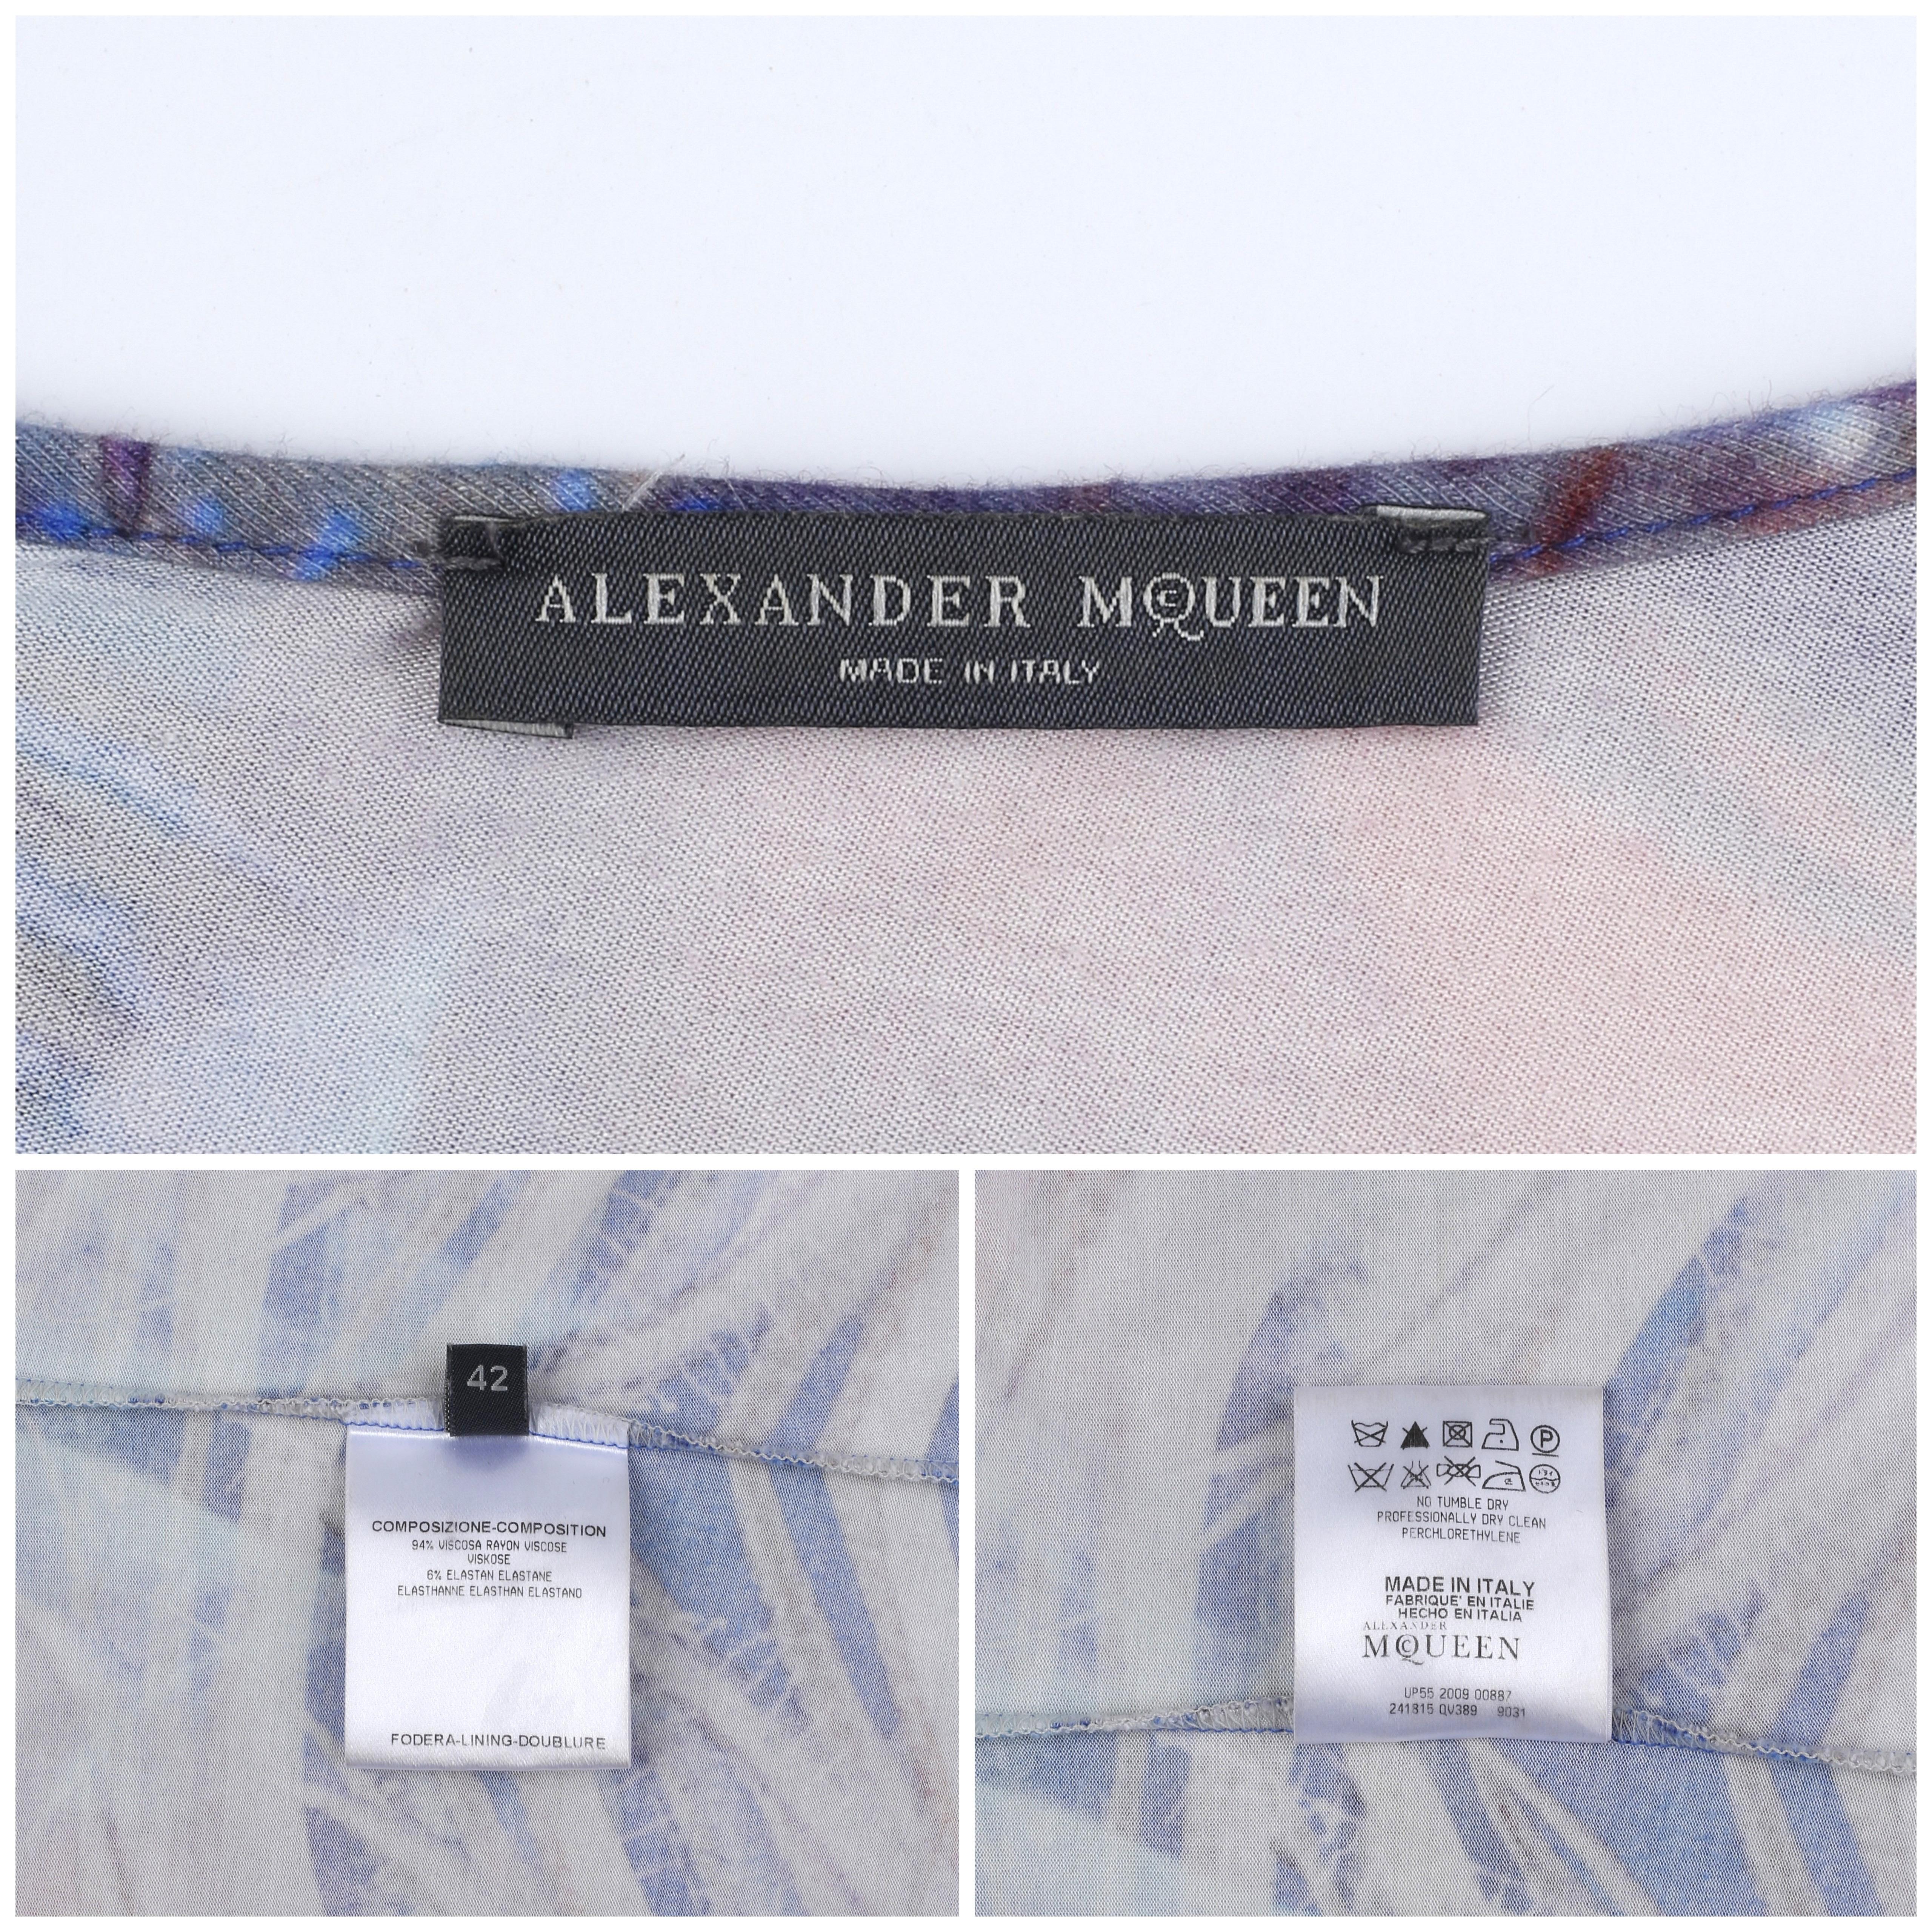 Alexander McQueen S/S 2010 